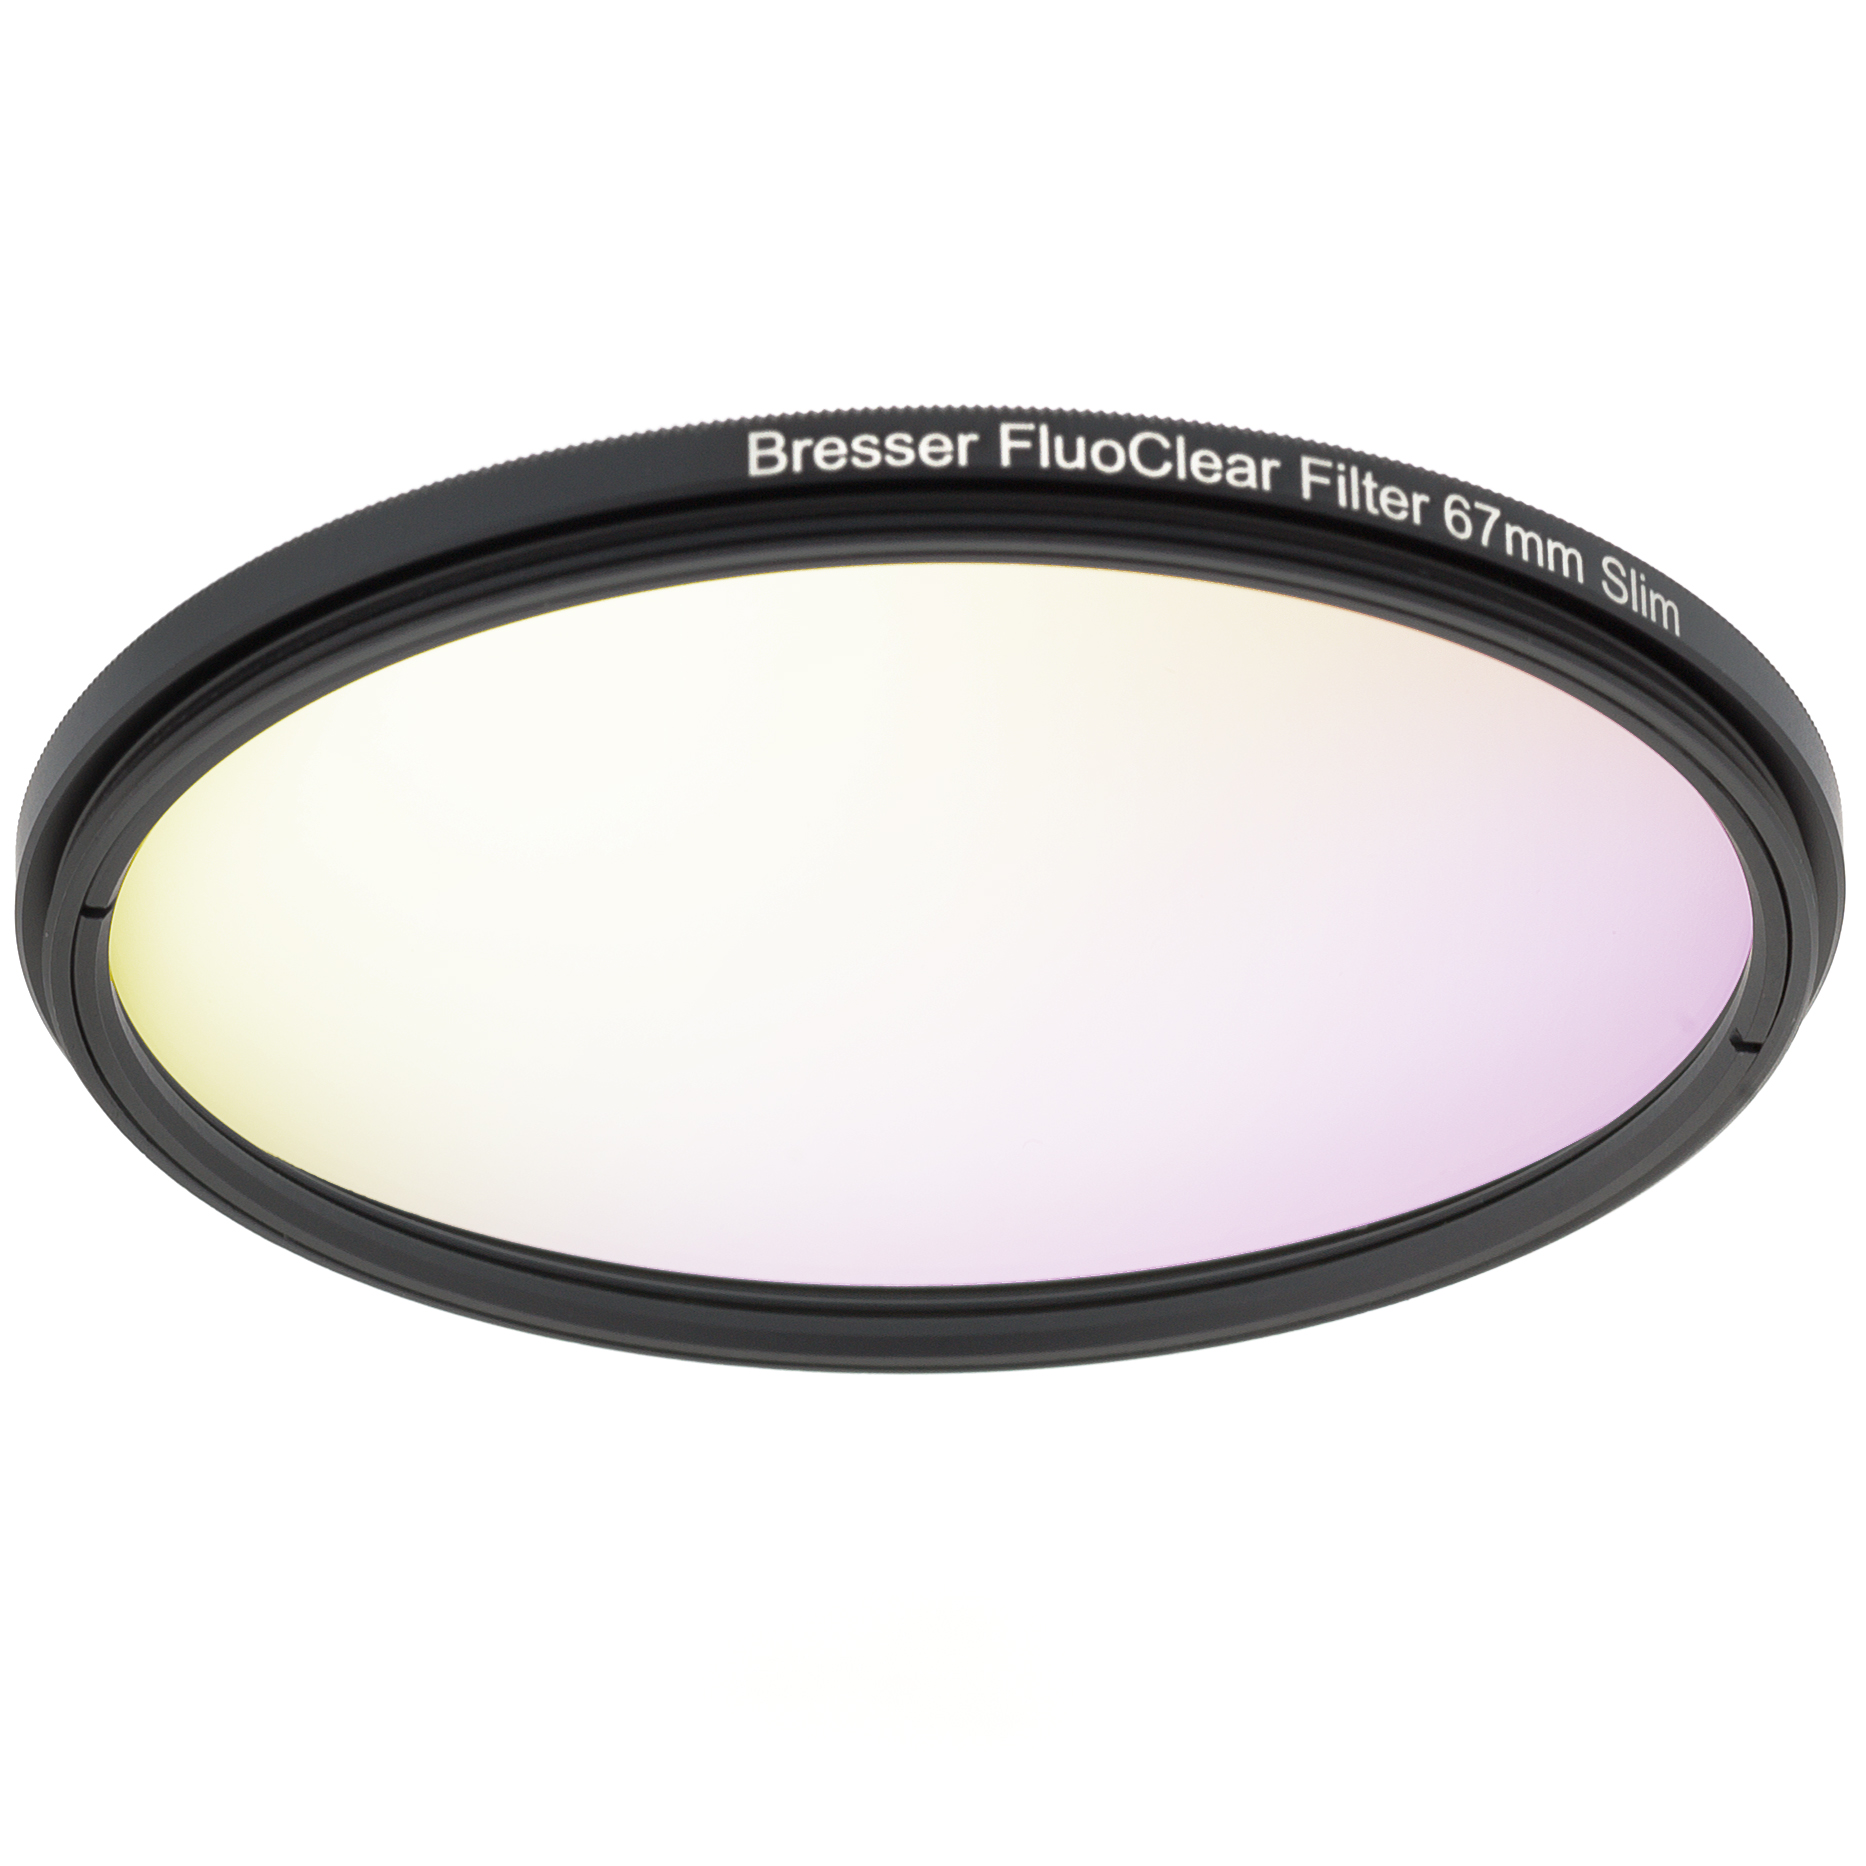 BRESSER FluoClear filter for fluorescence 67mm slim